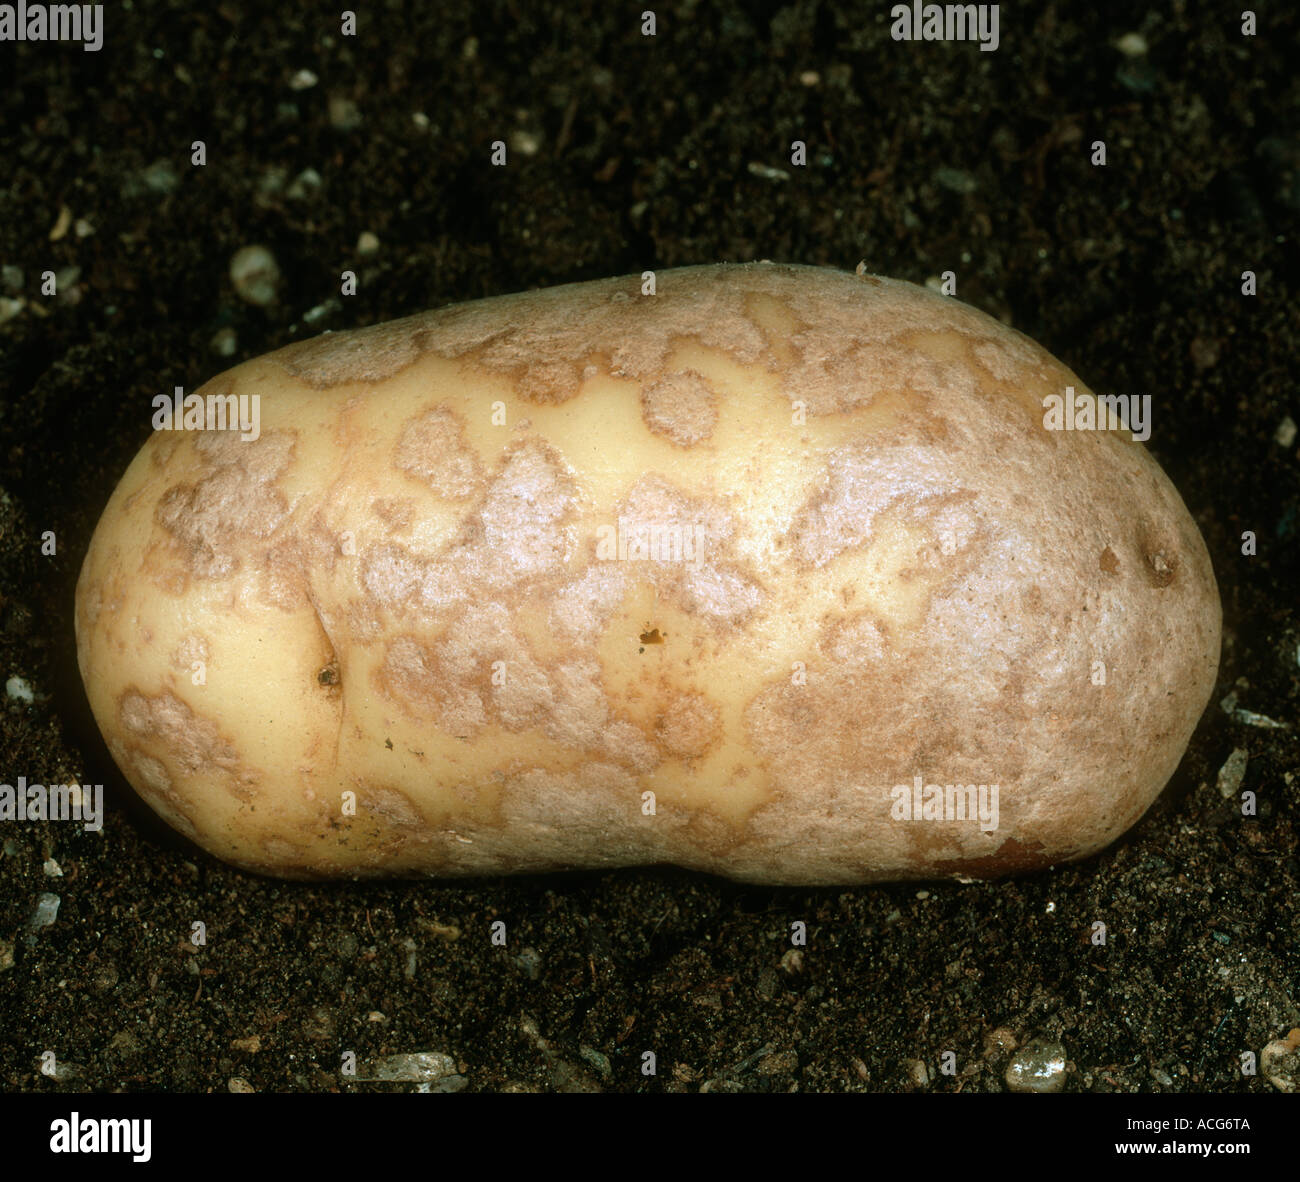 Silver scurf Helminthosporium solani on potato tuber skin Stock Photo